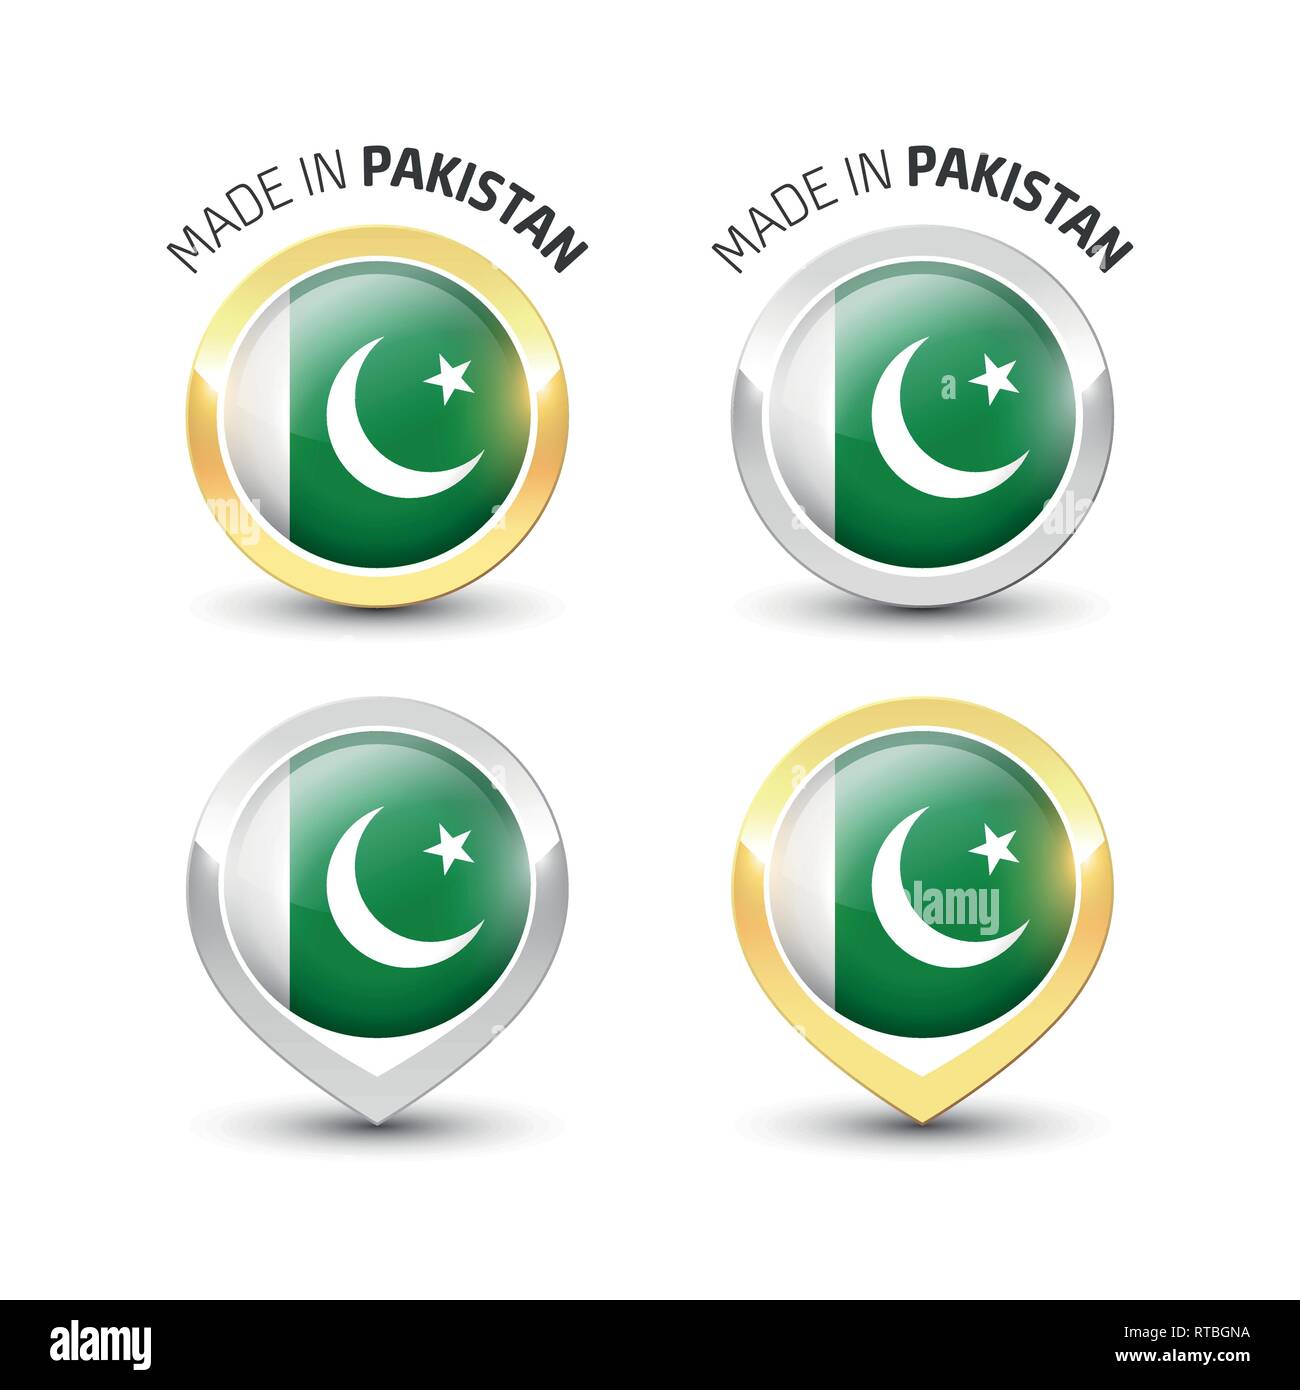 Faites au Pakistan - label garanti avec le drapeau pakistanais de l'intérieur de ronde des icônes d'or et d'argent. Illustration de Vecteur